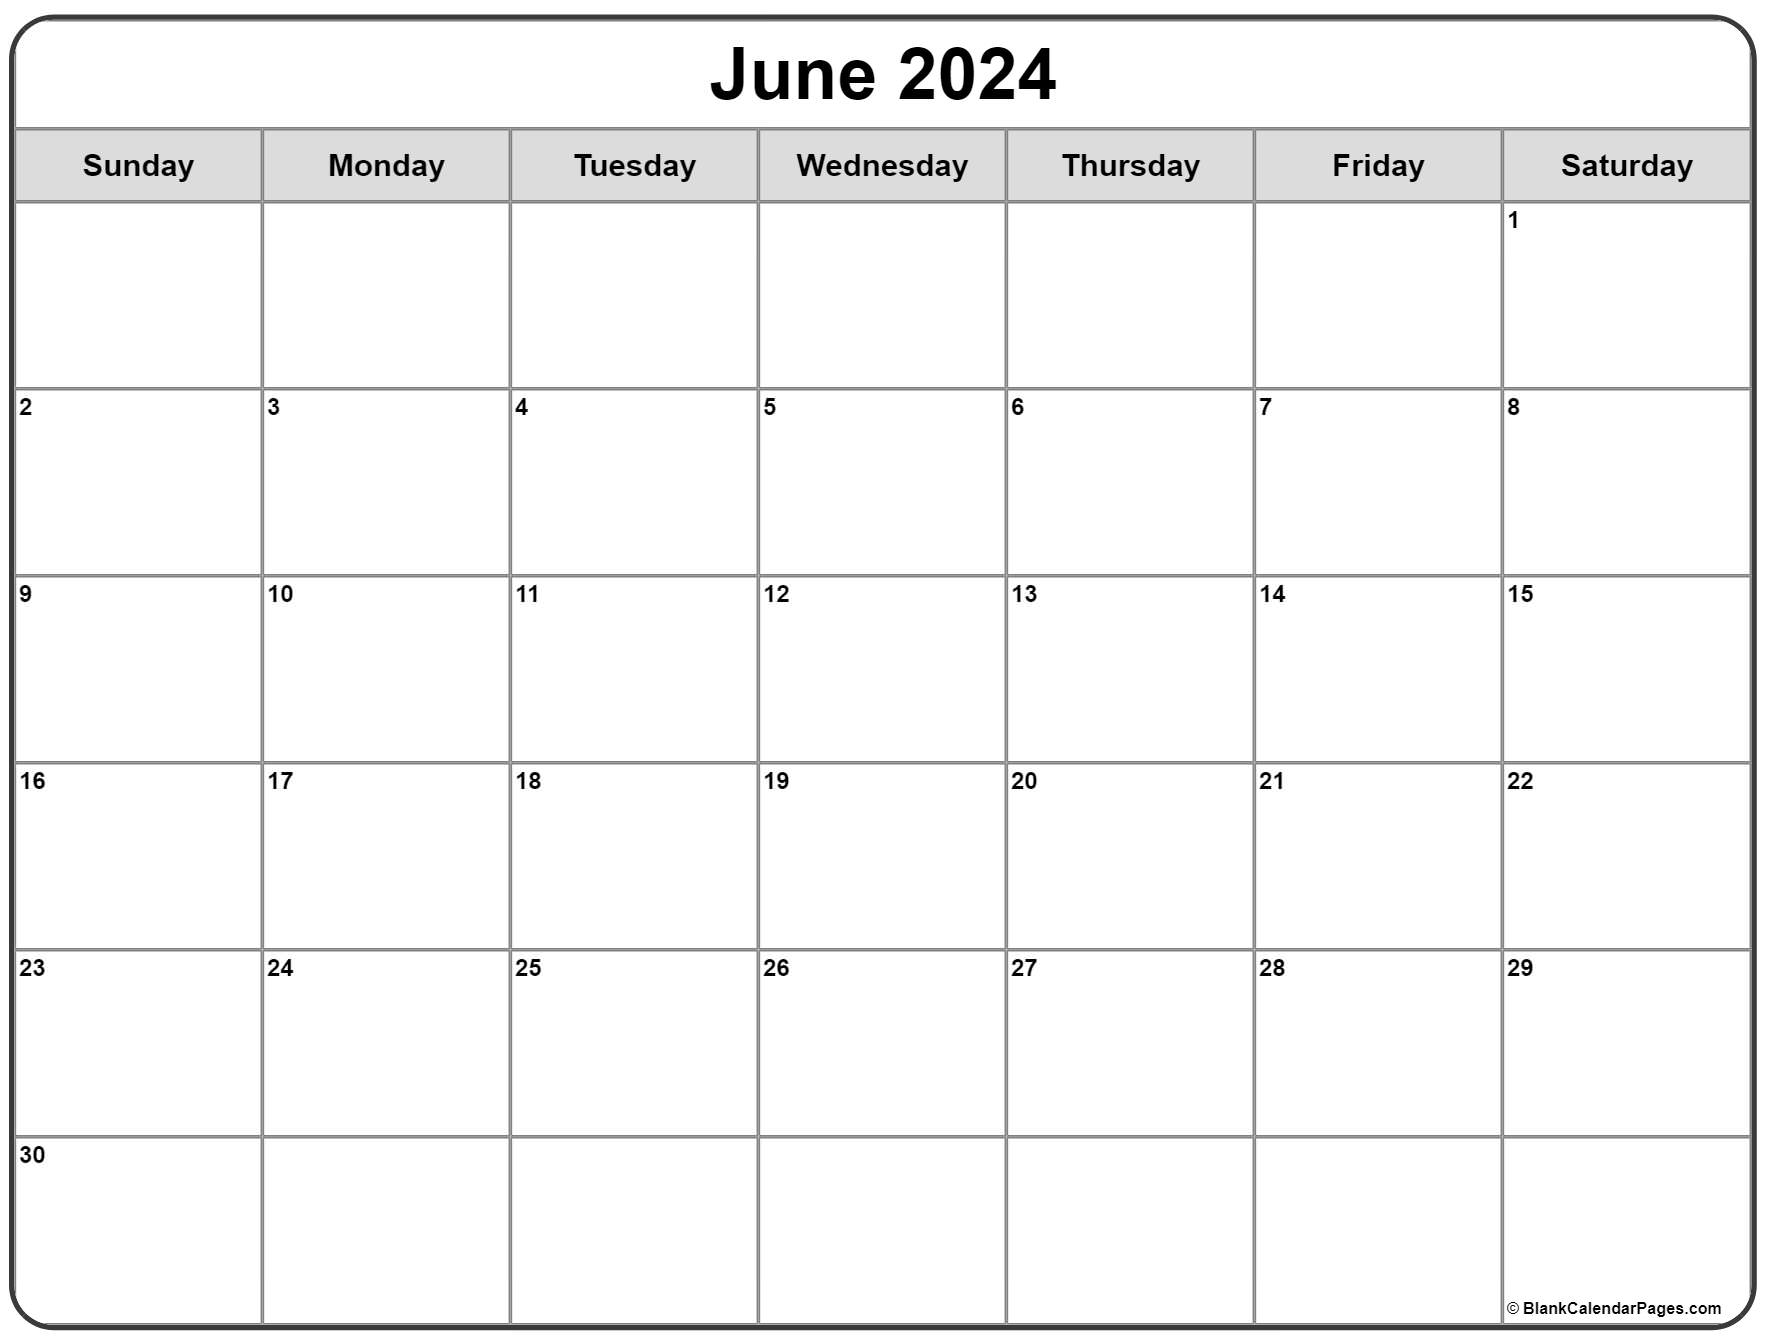 Ковид 2024 по дням. Календарь 2024 по месяцам. Календарь на октябрь 2024 года. Календарь 2024 года по месяцам. Календарь на январь 2024 года.